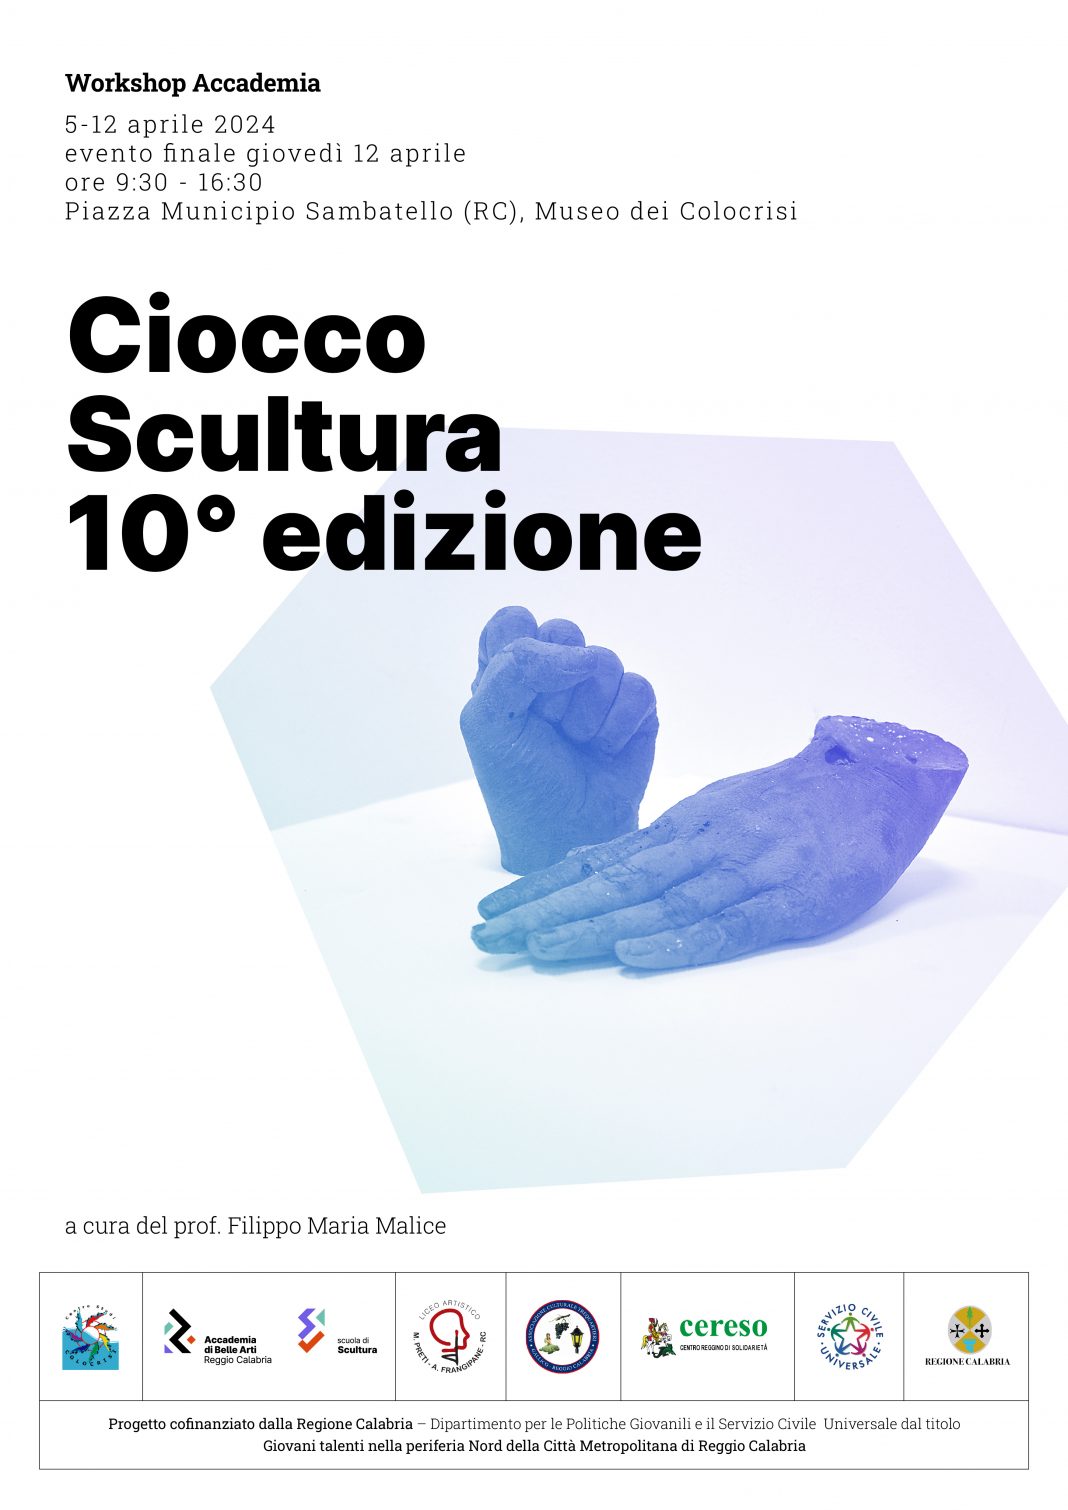 Ciocco Scultura 10° edizionehttps://www.exibart.com/repository/media/formidable/11/img/240/3Tavola-disegno-7-copia-3-1068x1510.jpg